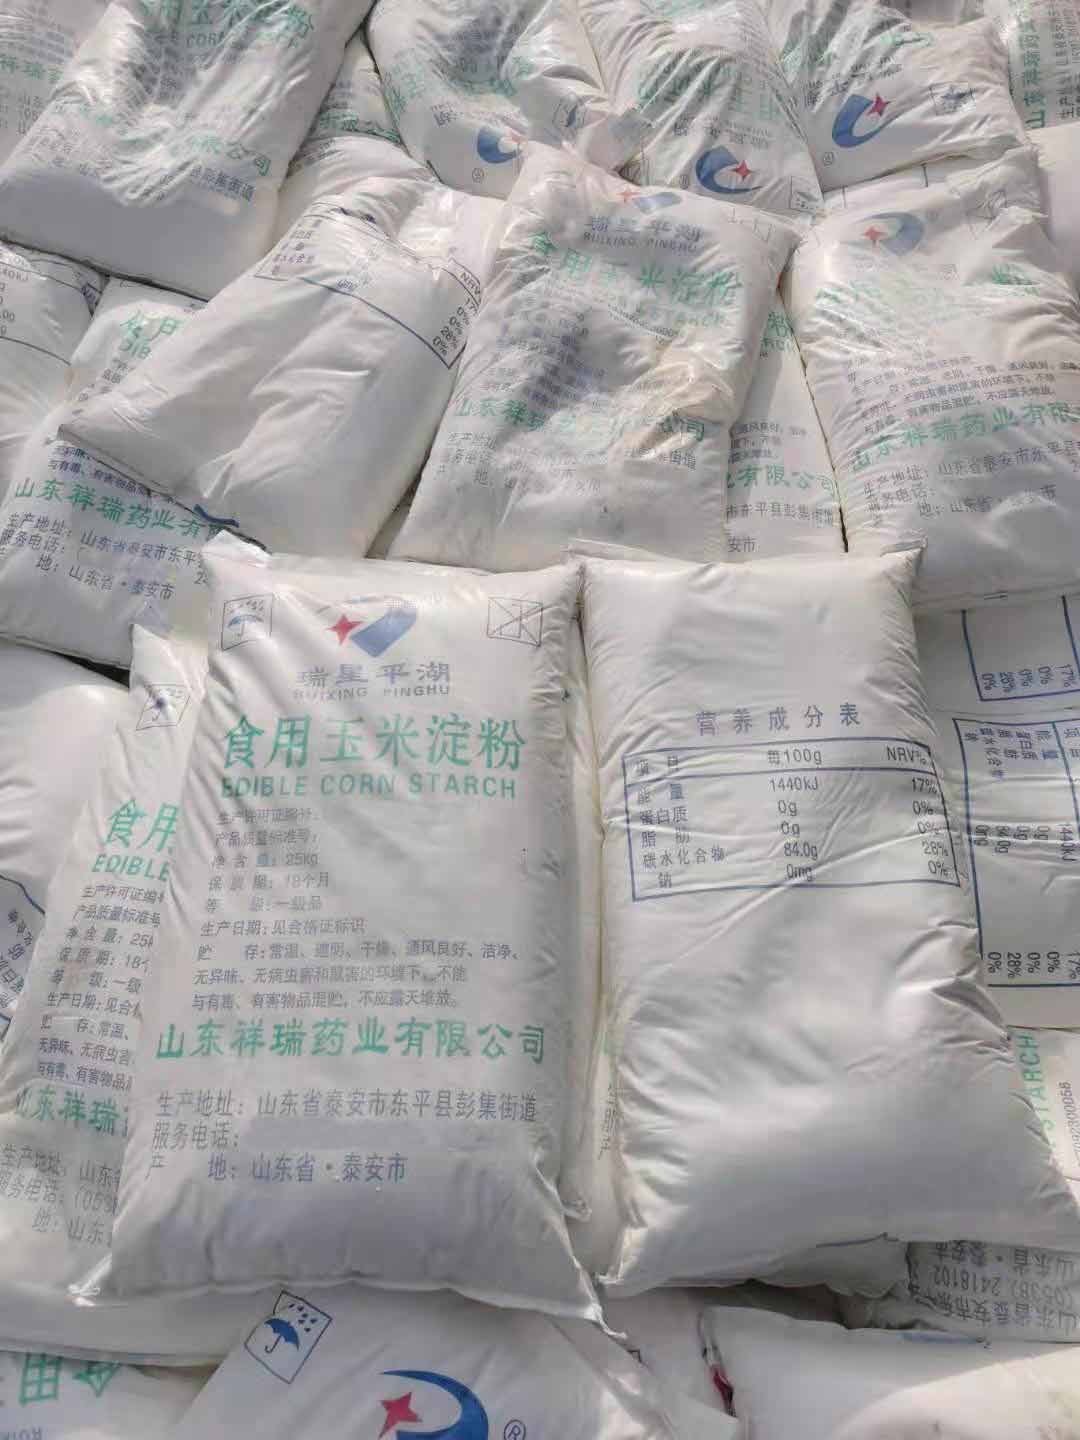 山东祥瑞玉米淀粉 厂家在线报价 武汉德合昌食品添加剂有限公司